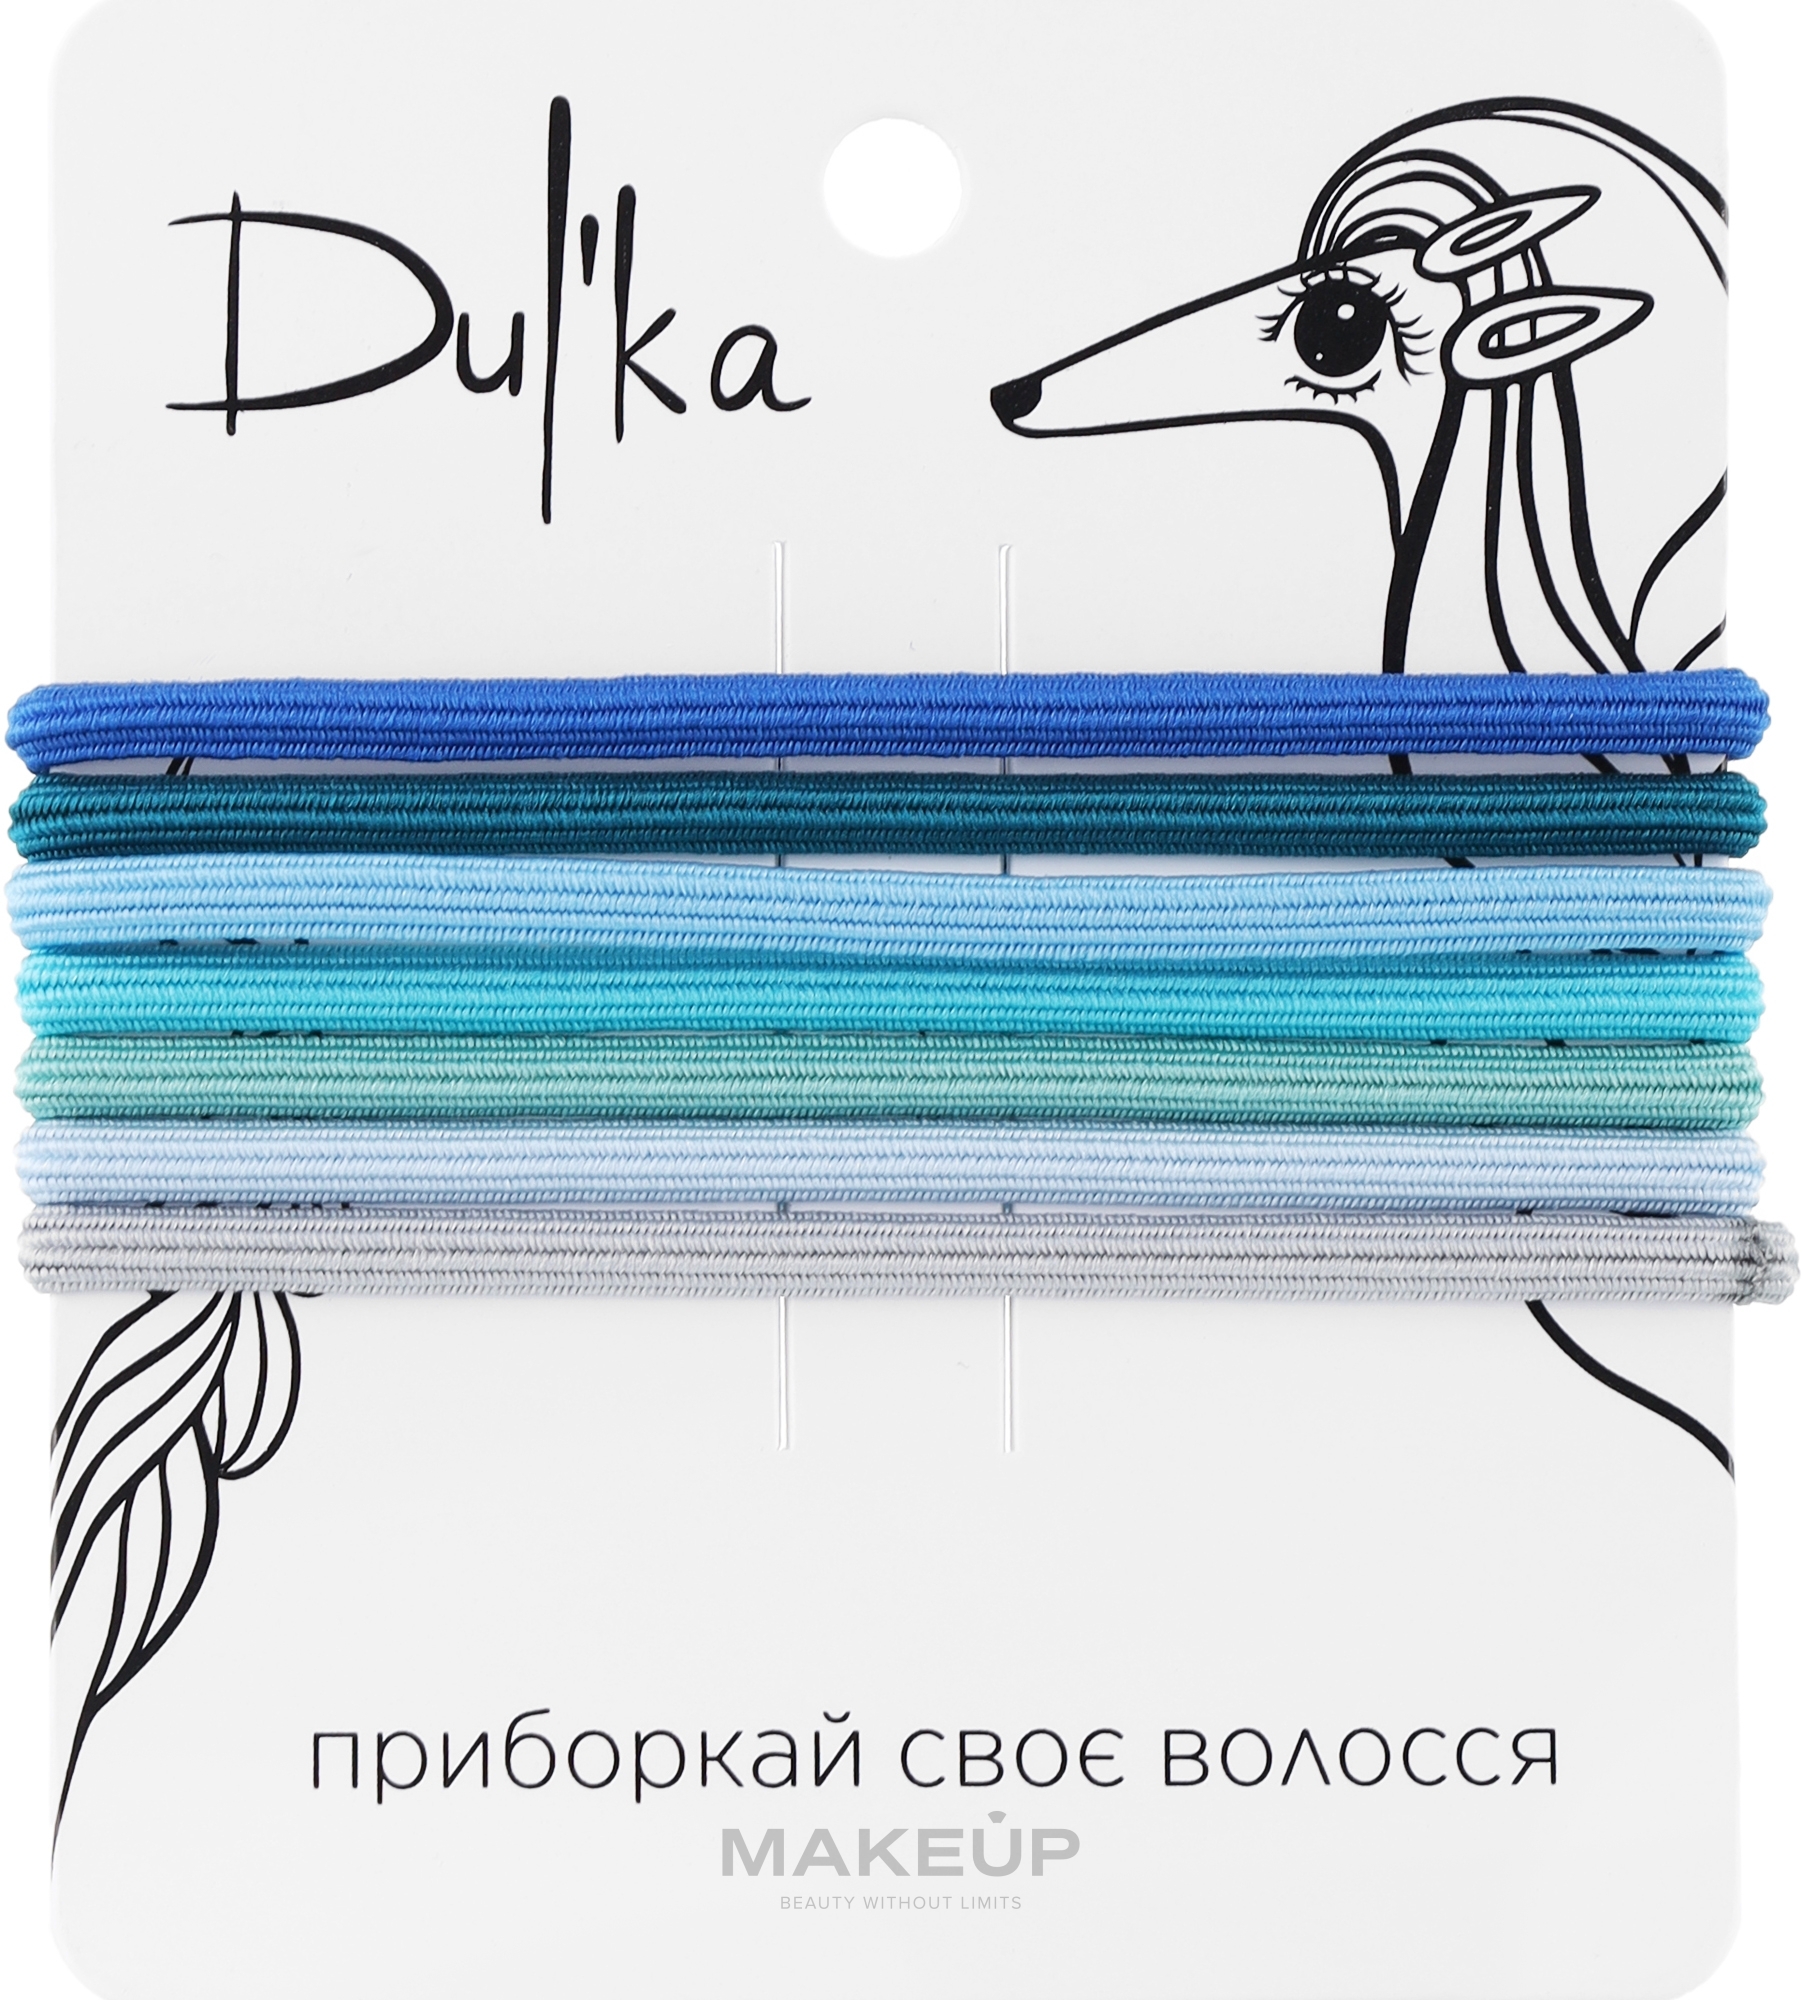 Набор разноцветных резинок для волос UH717708, 7 шт - Dulka  — фото 7шт